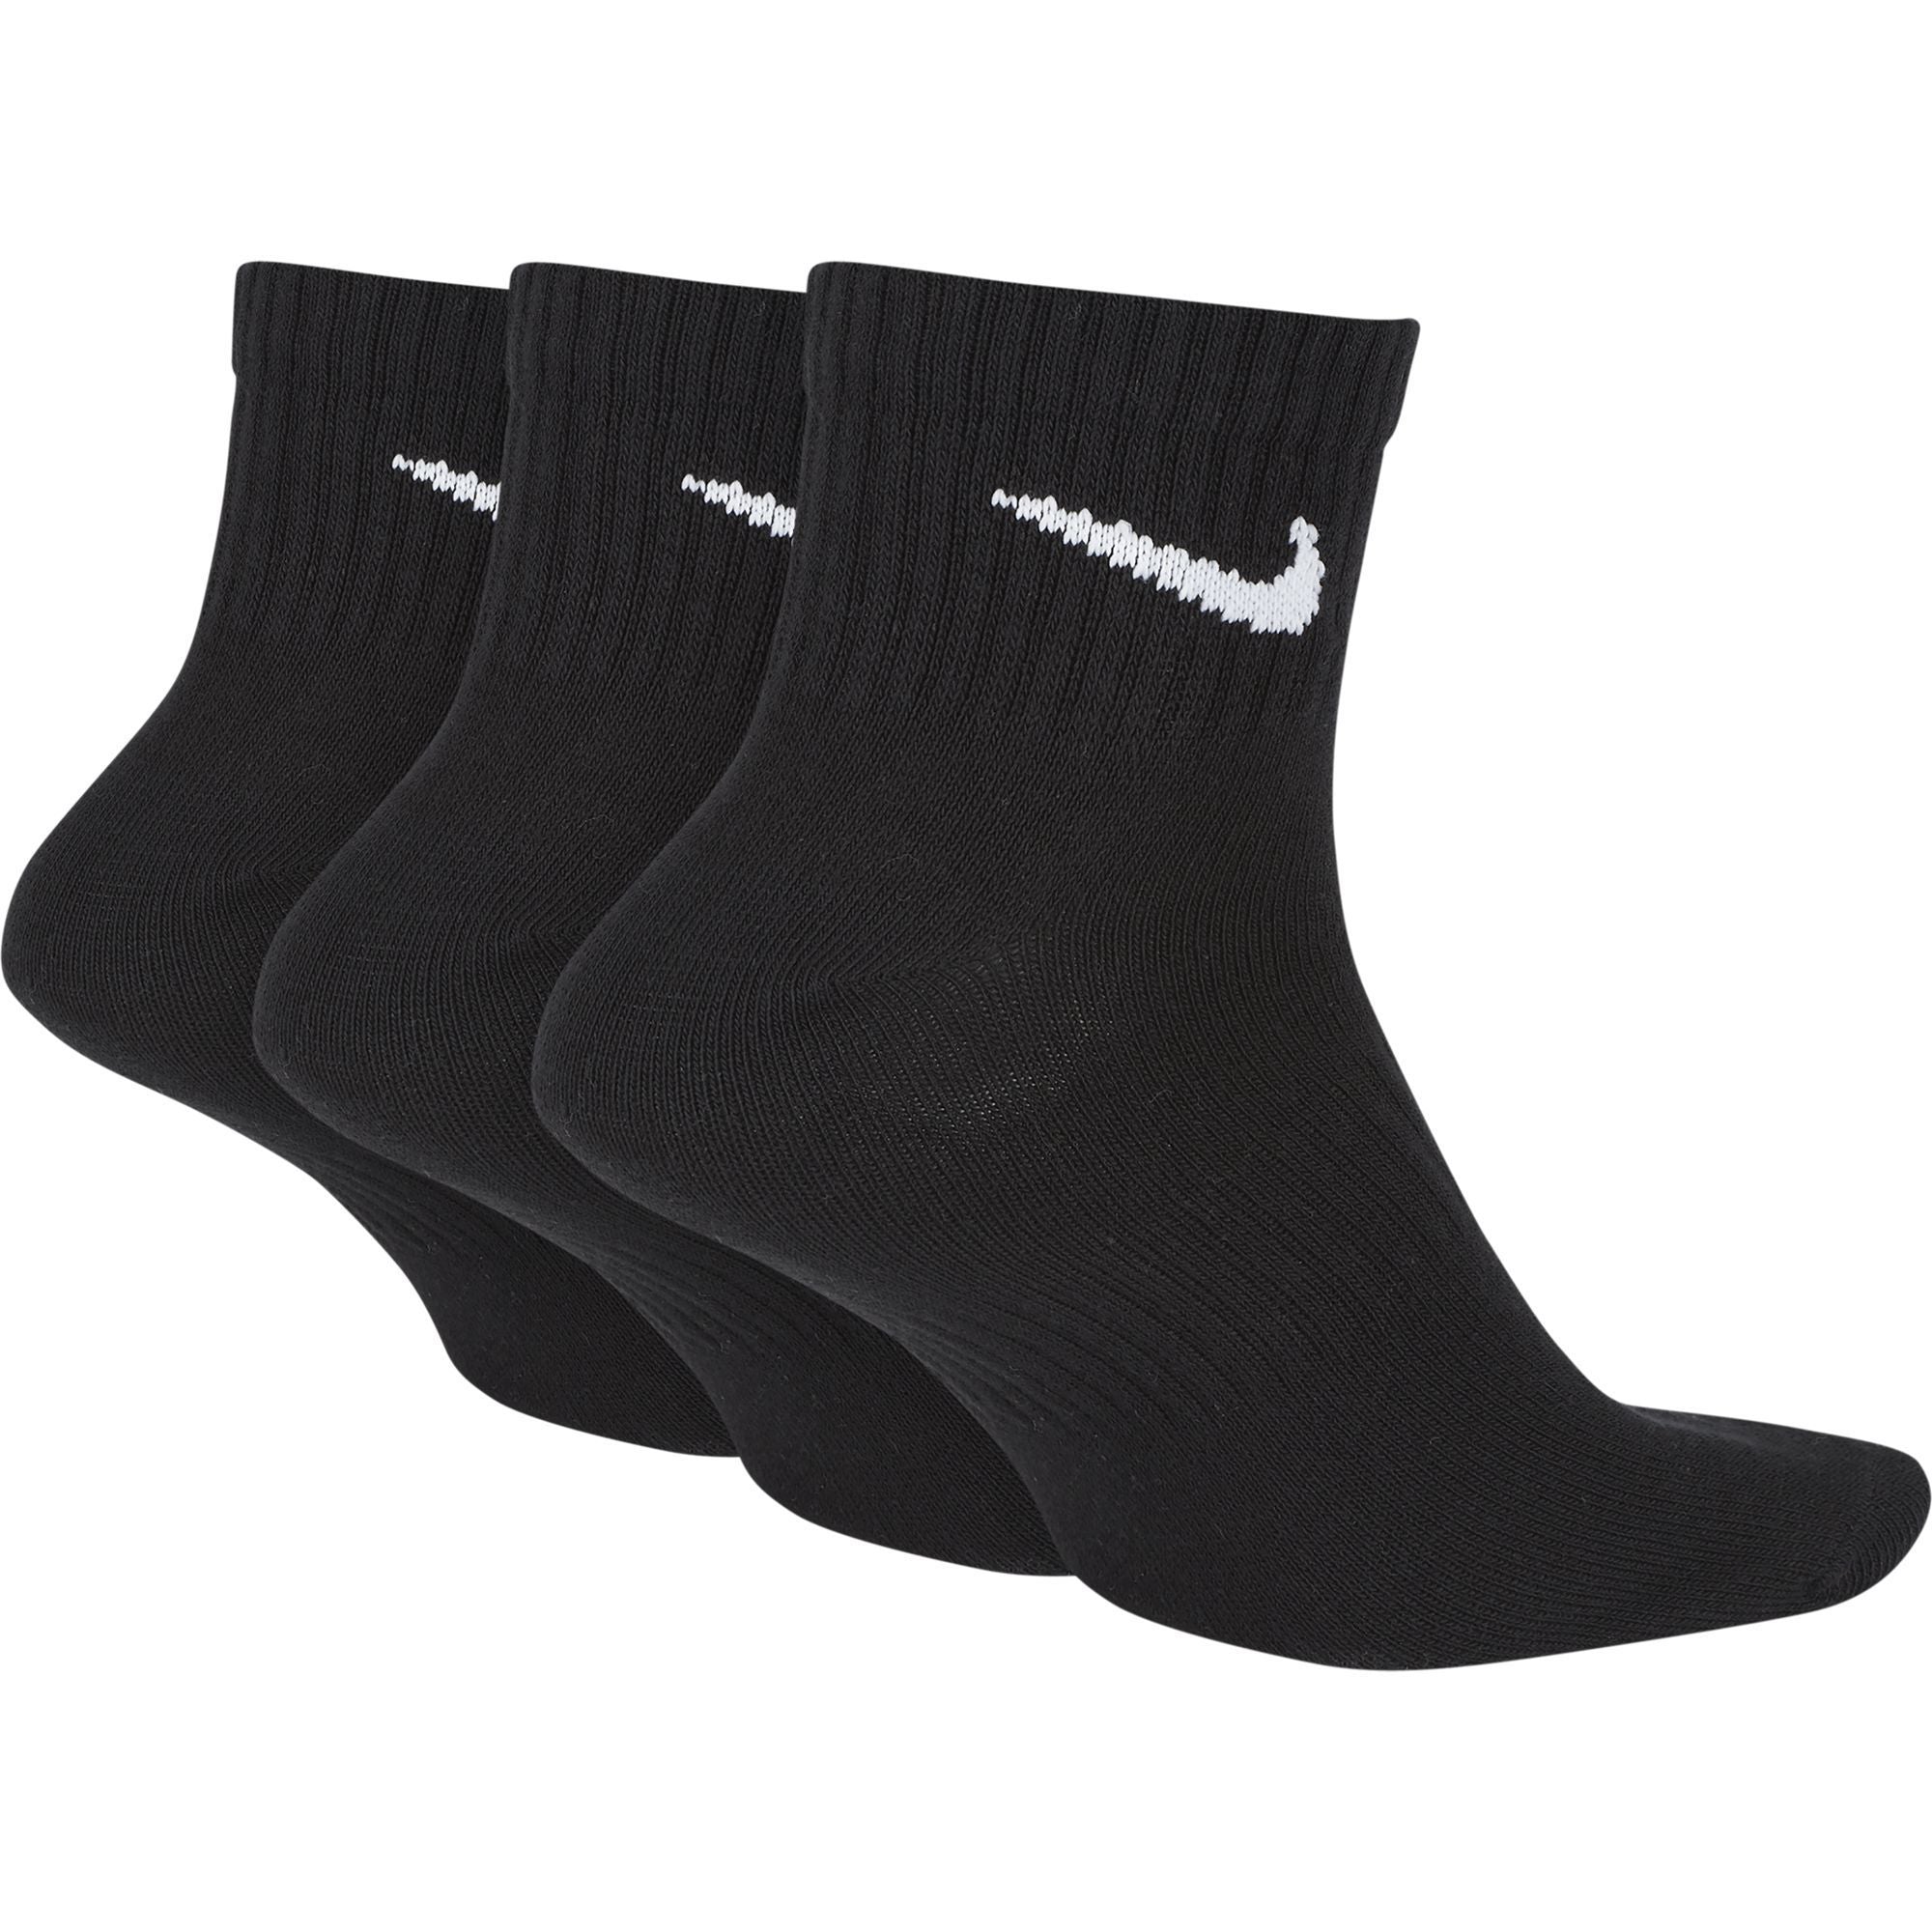 3 Pack Everyday Lighweight Ankle Socks